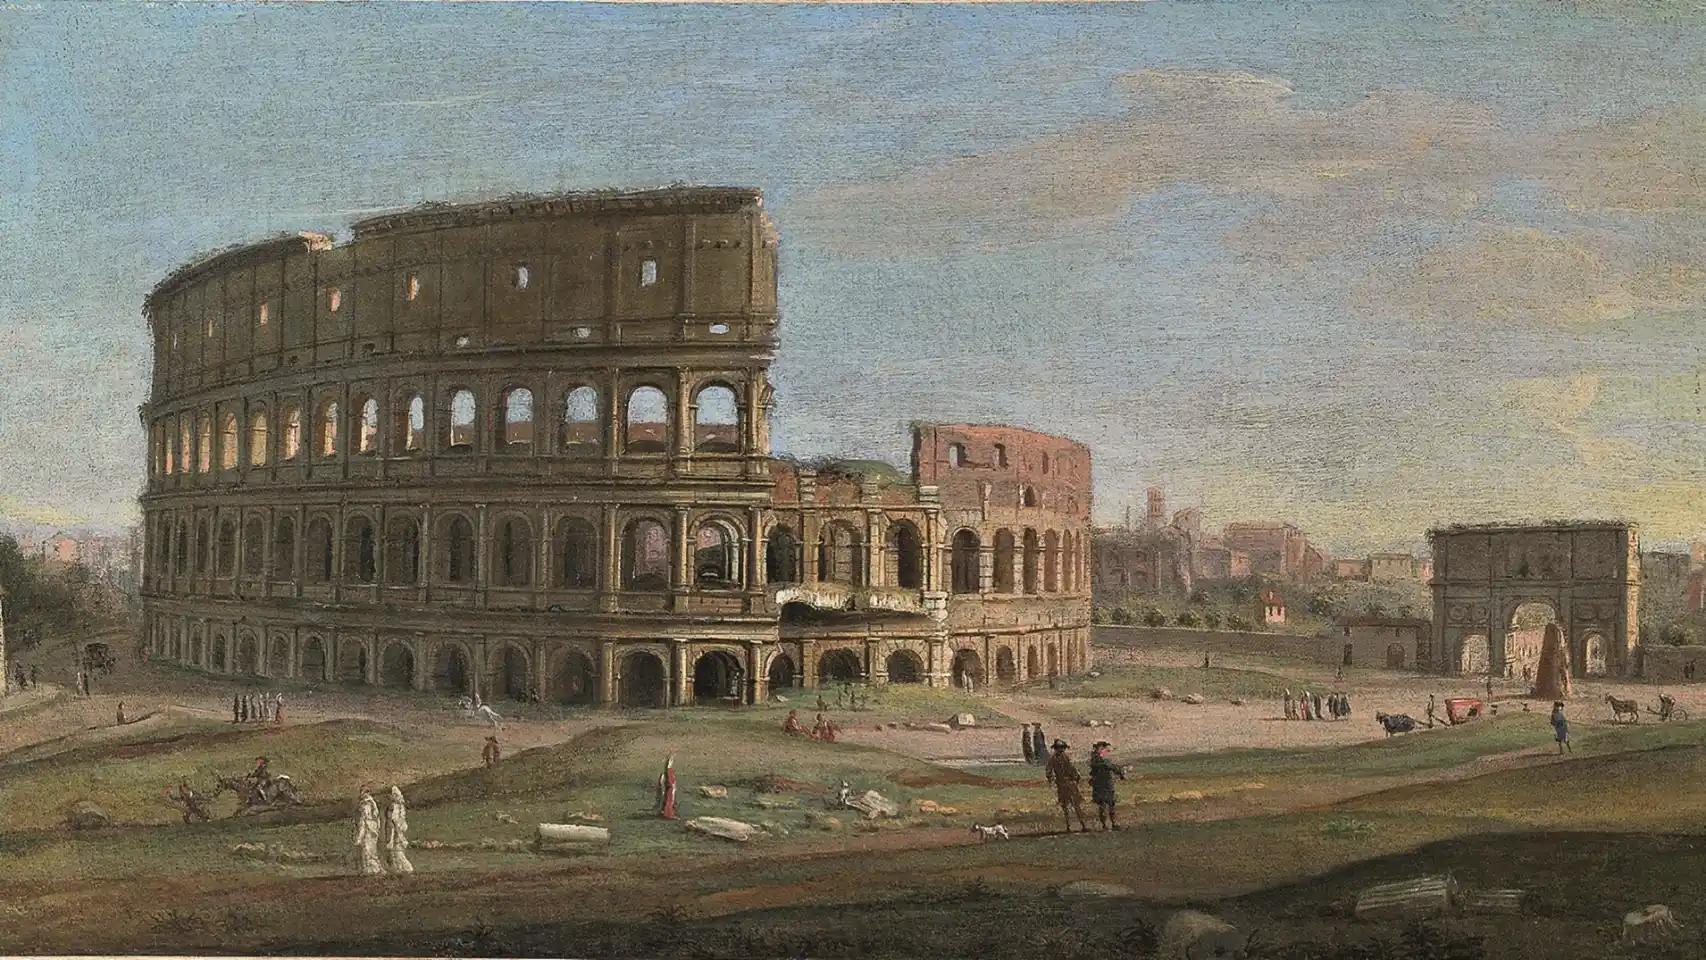 coliseo romano historia resumida - Por qué se destruyó el Coliseo romano